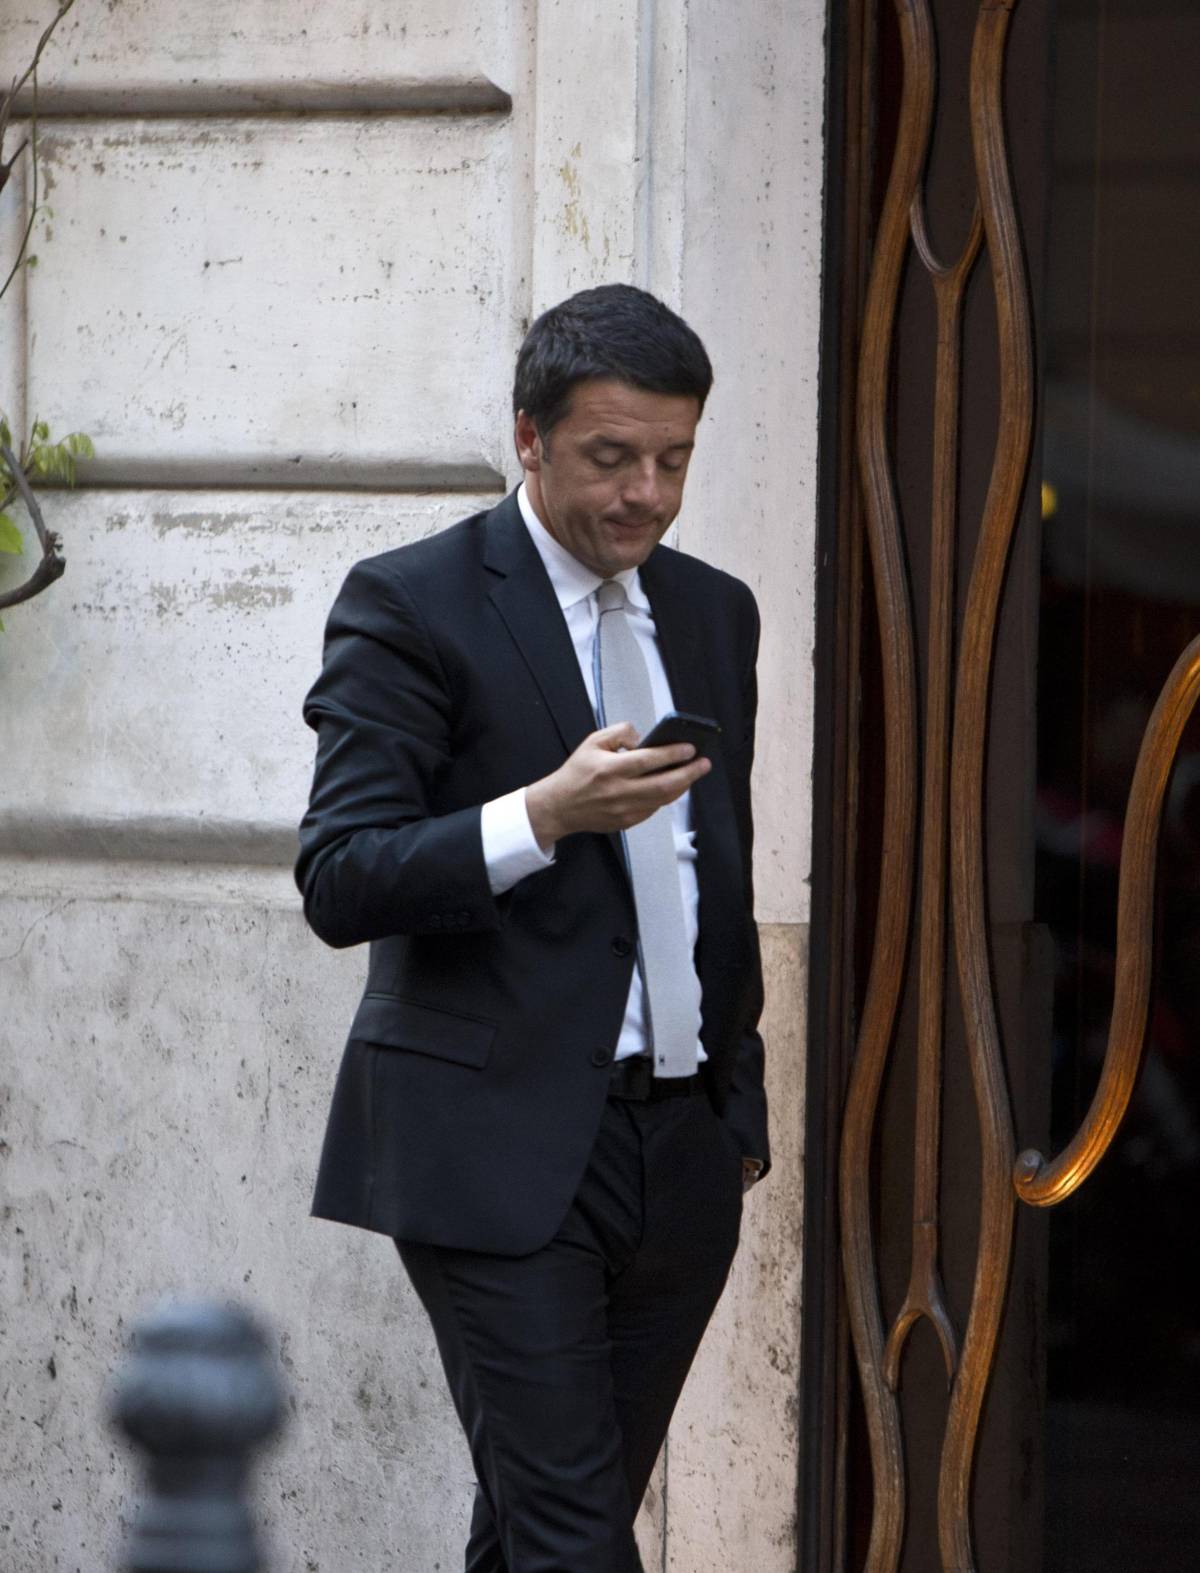 Così l'oste inguaia Renzi. Si muove la Corte dei Conti